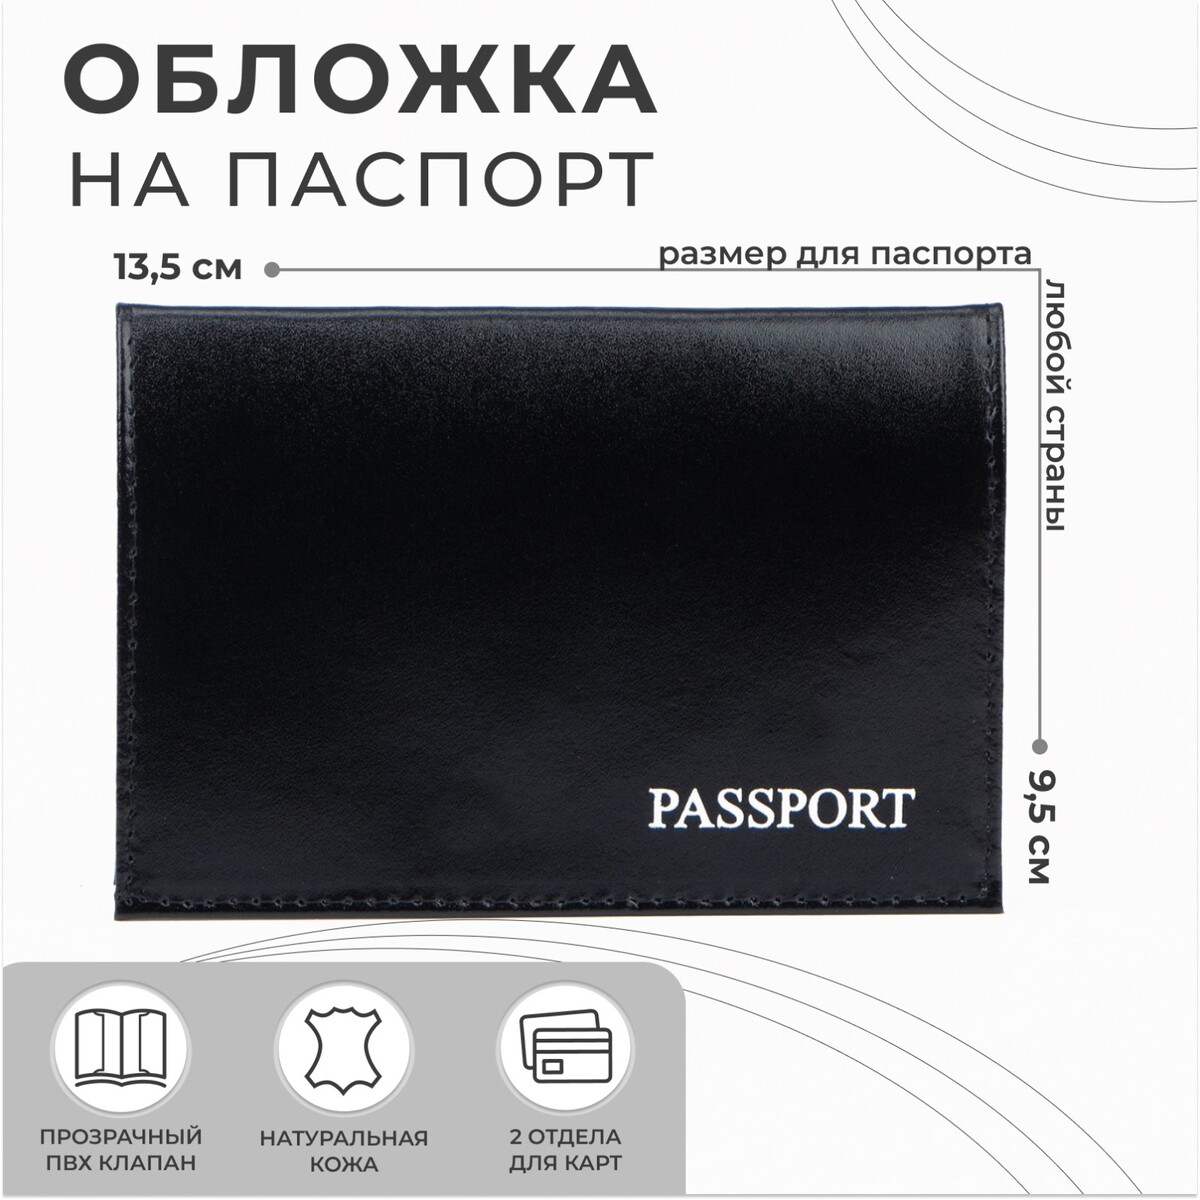 Обложка для паспорта, тиснение, цвет черный